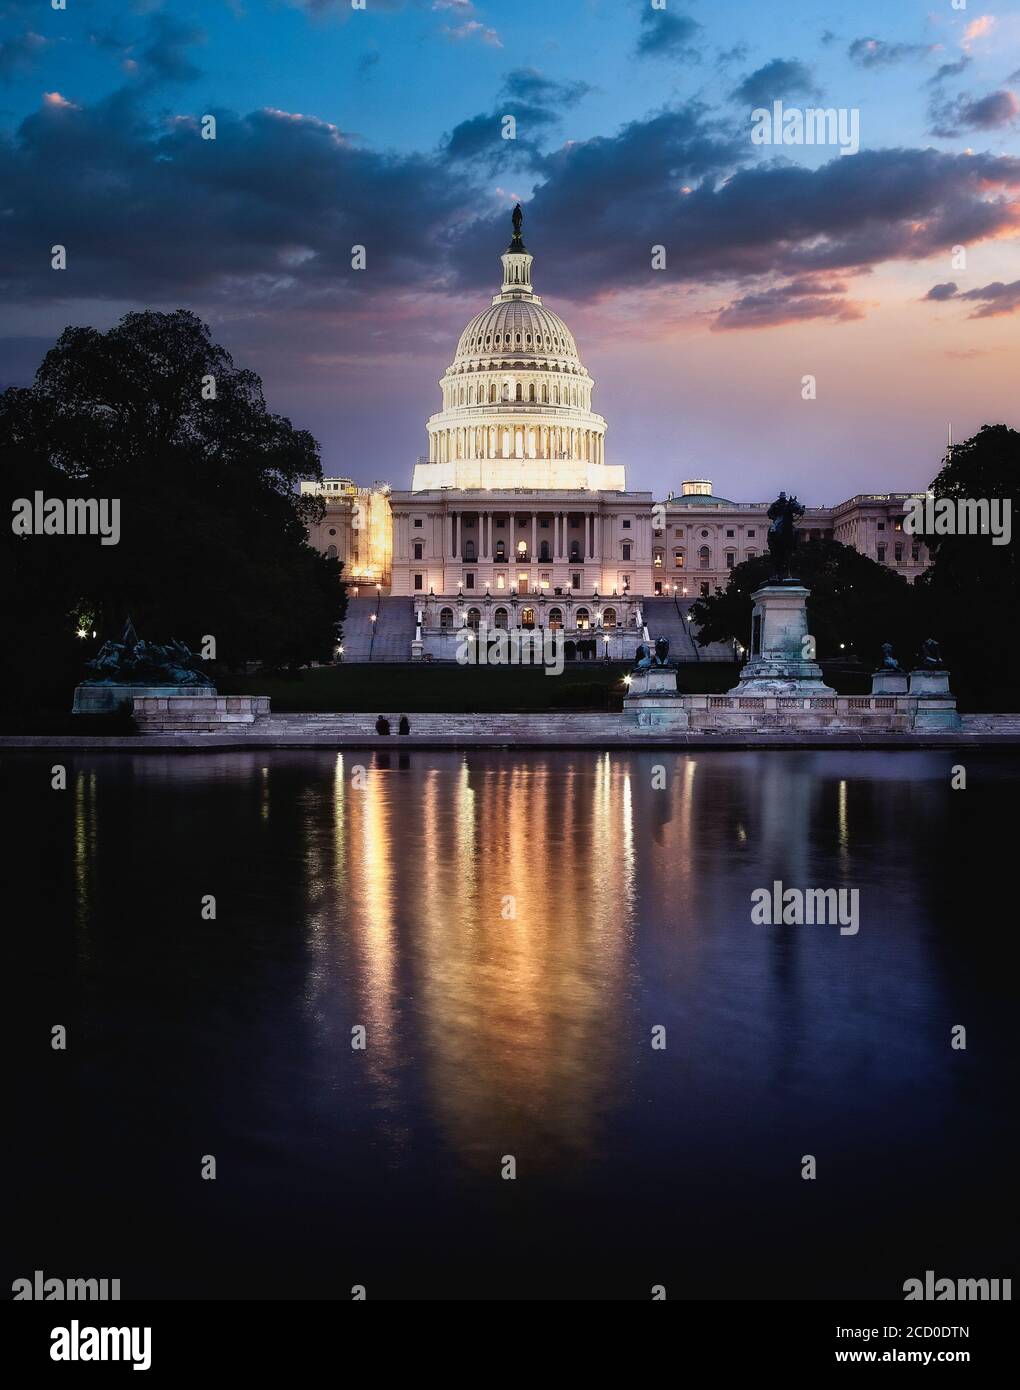 Das US-Kapitolgebäude in Washington, DC beherbergt das Repräsentantenhaus und den Senat. Stockfoto